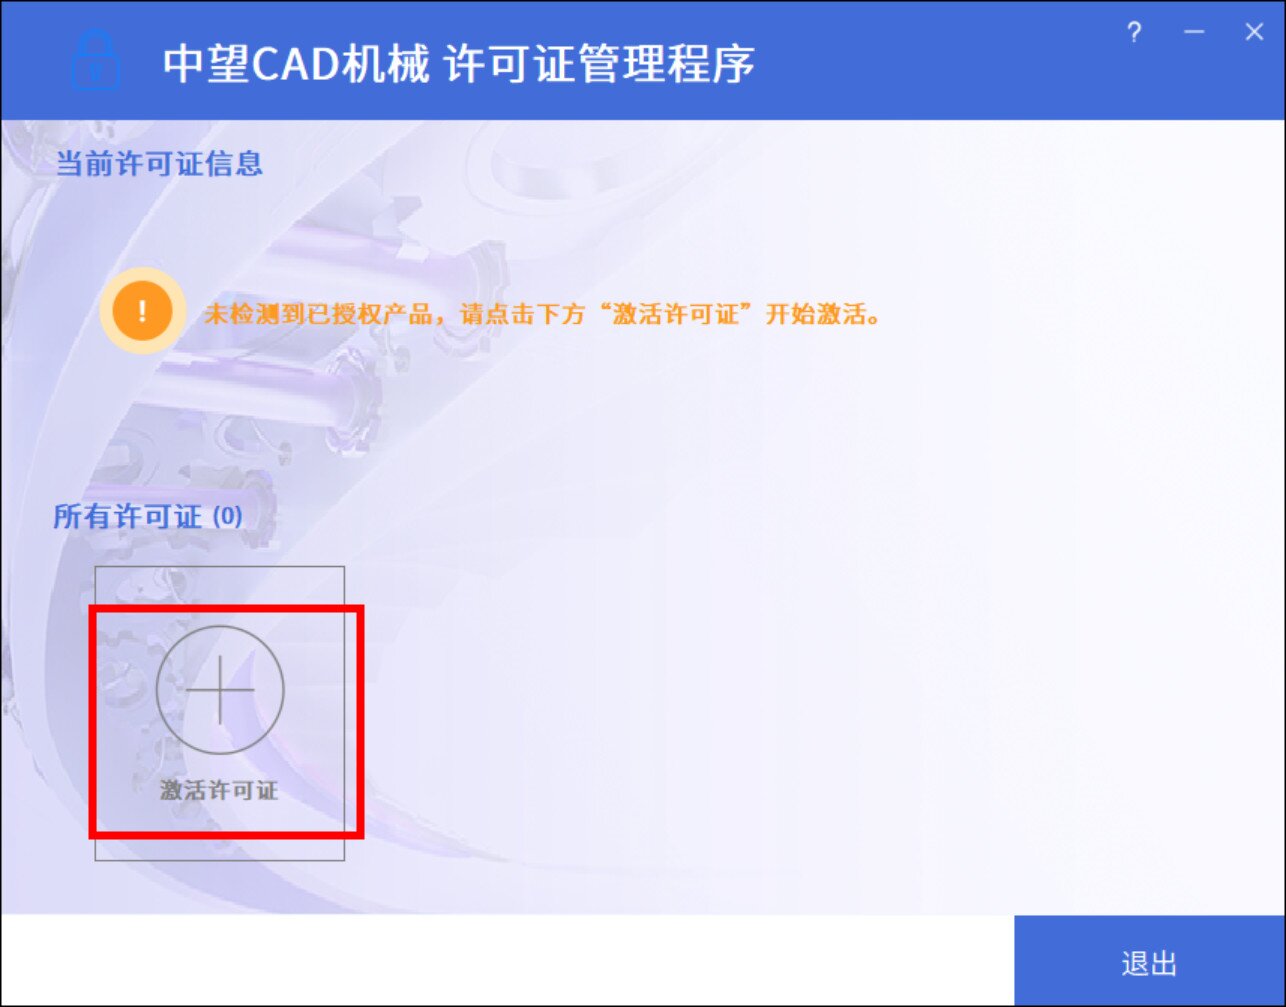 中望CAD2024机械版(国产CAD制图软件) SP1.2中文激活永久使用下载